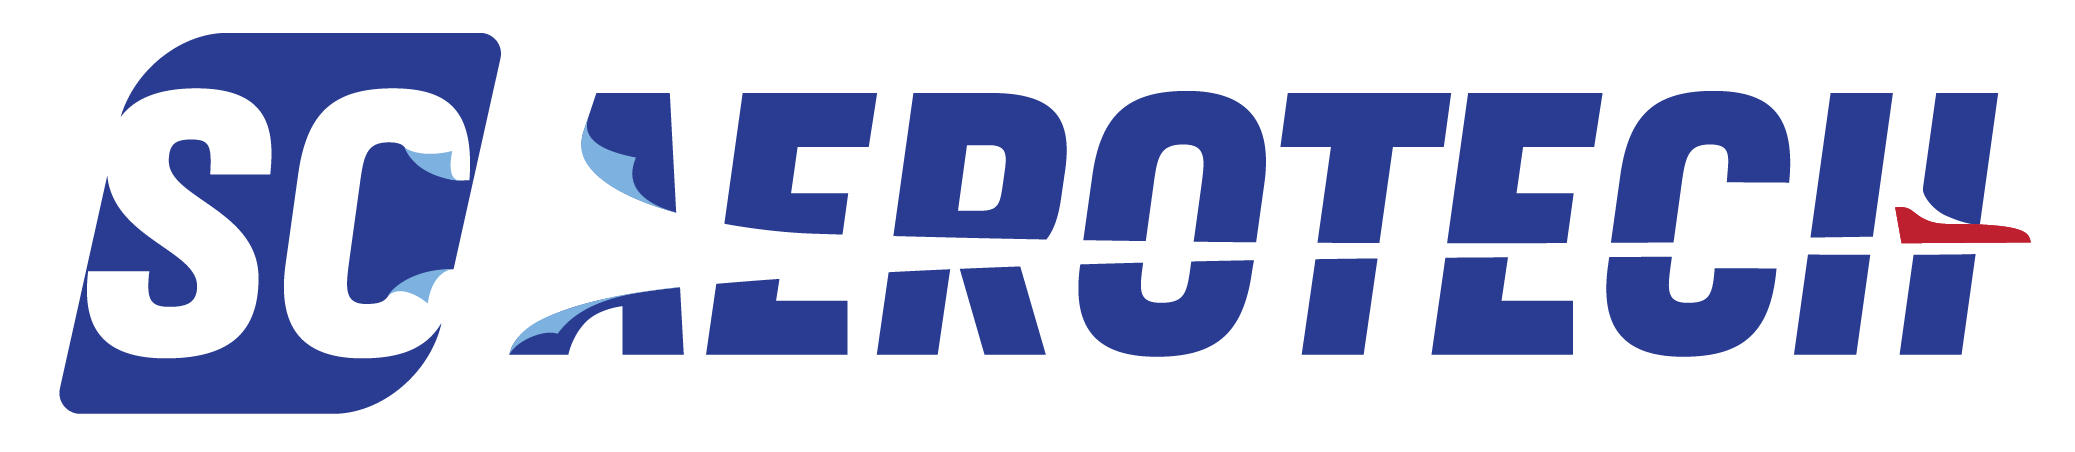 SC-AeroTech-Logo